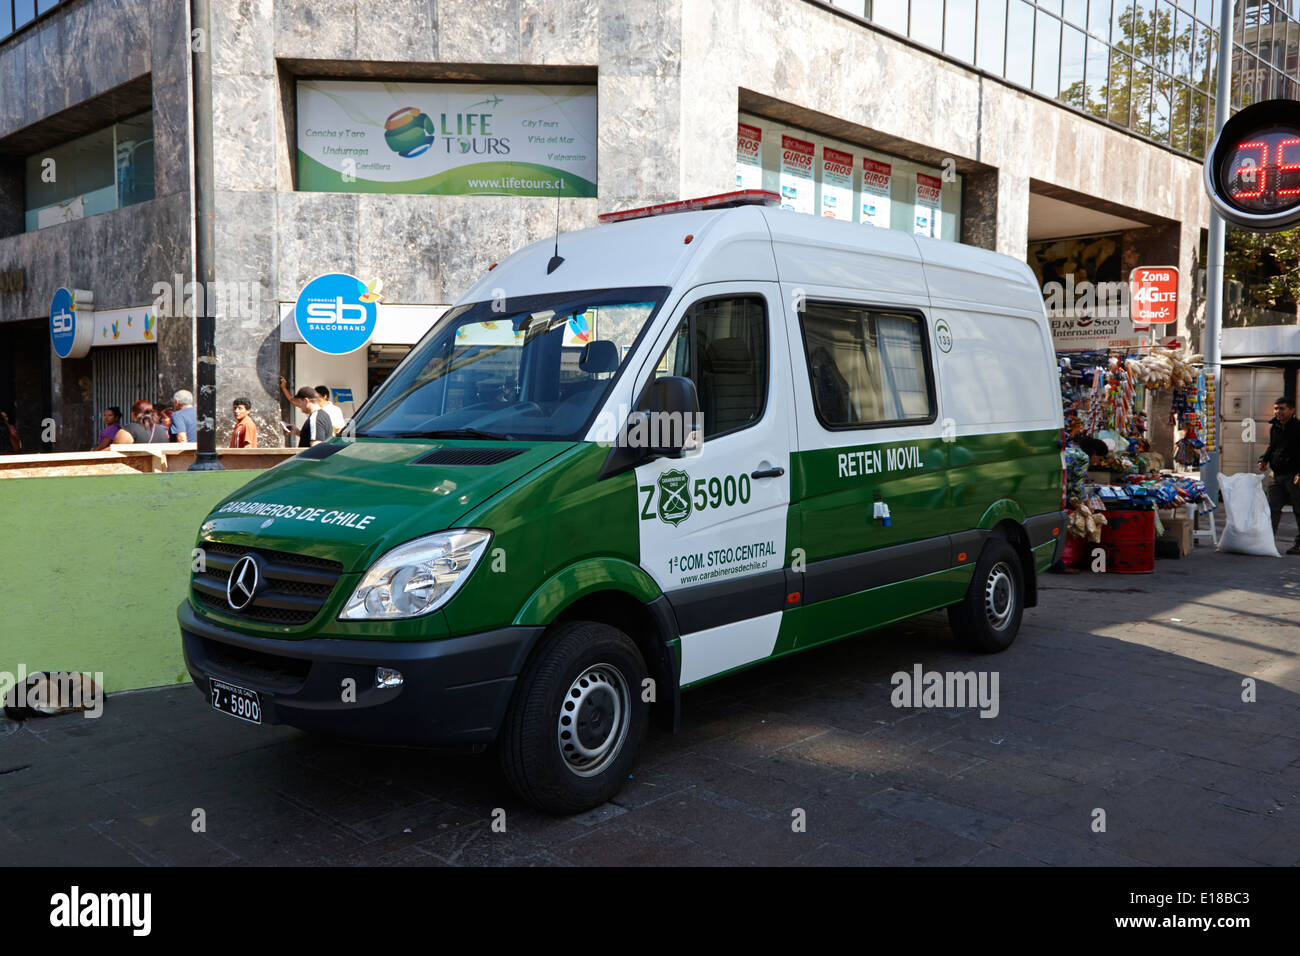 Les carabiniers du Chili la rétention de la police nationale de contrôle mobile movil véhicule au centre-ville de Santiago du Chili Banque D'Images